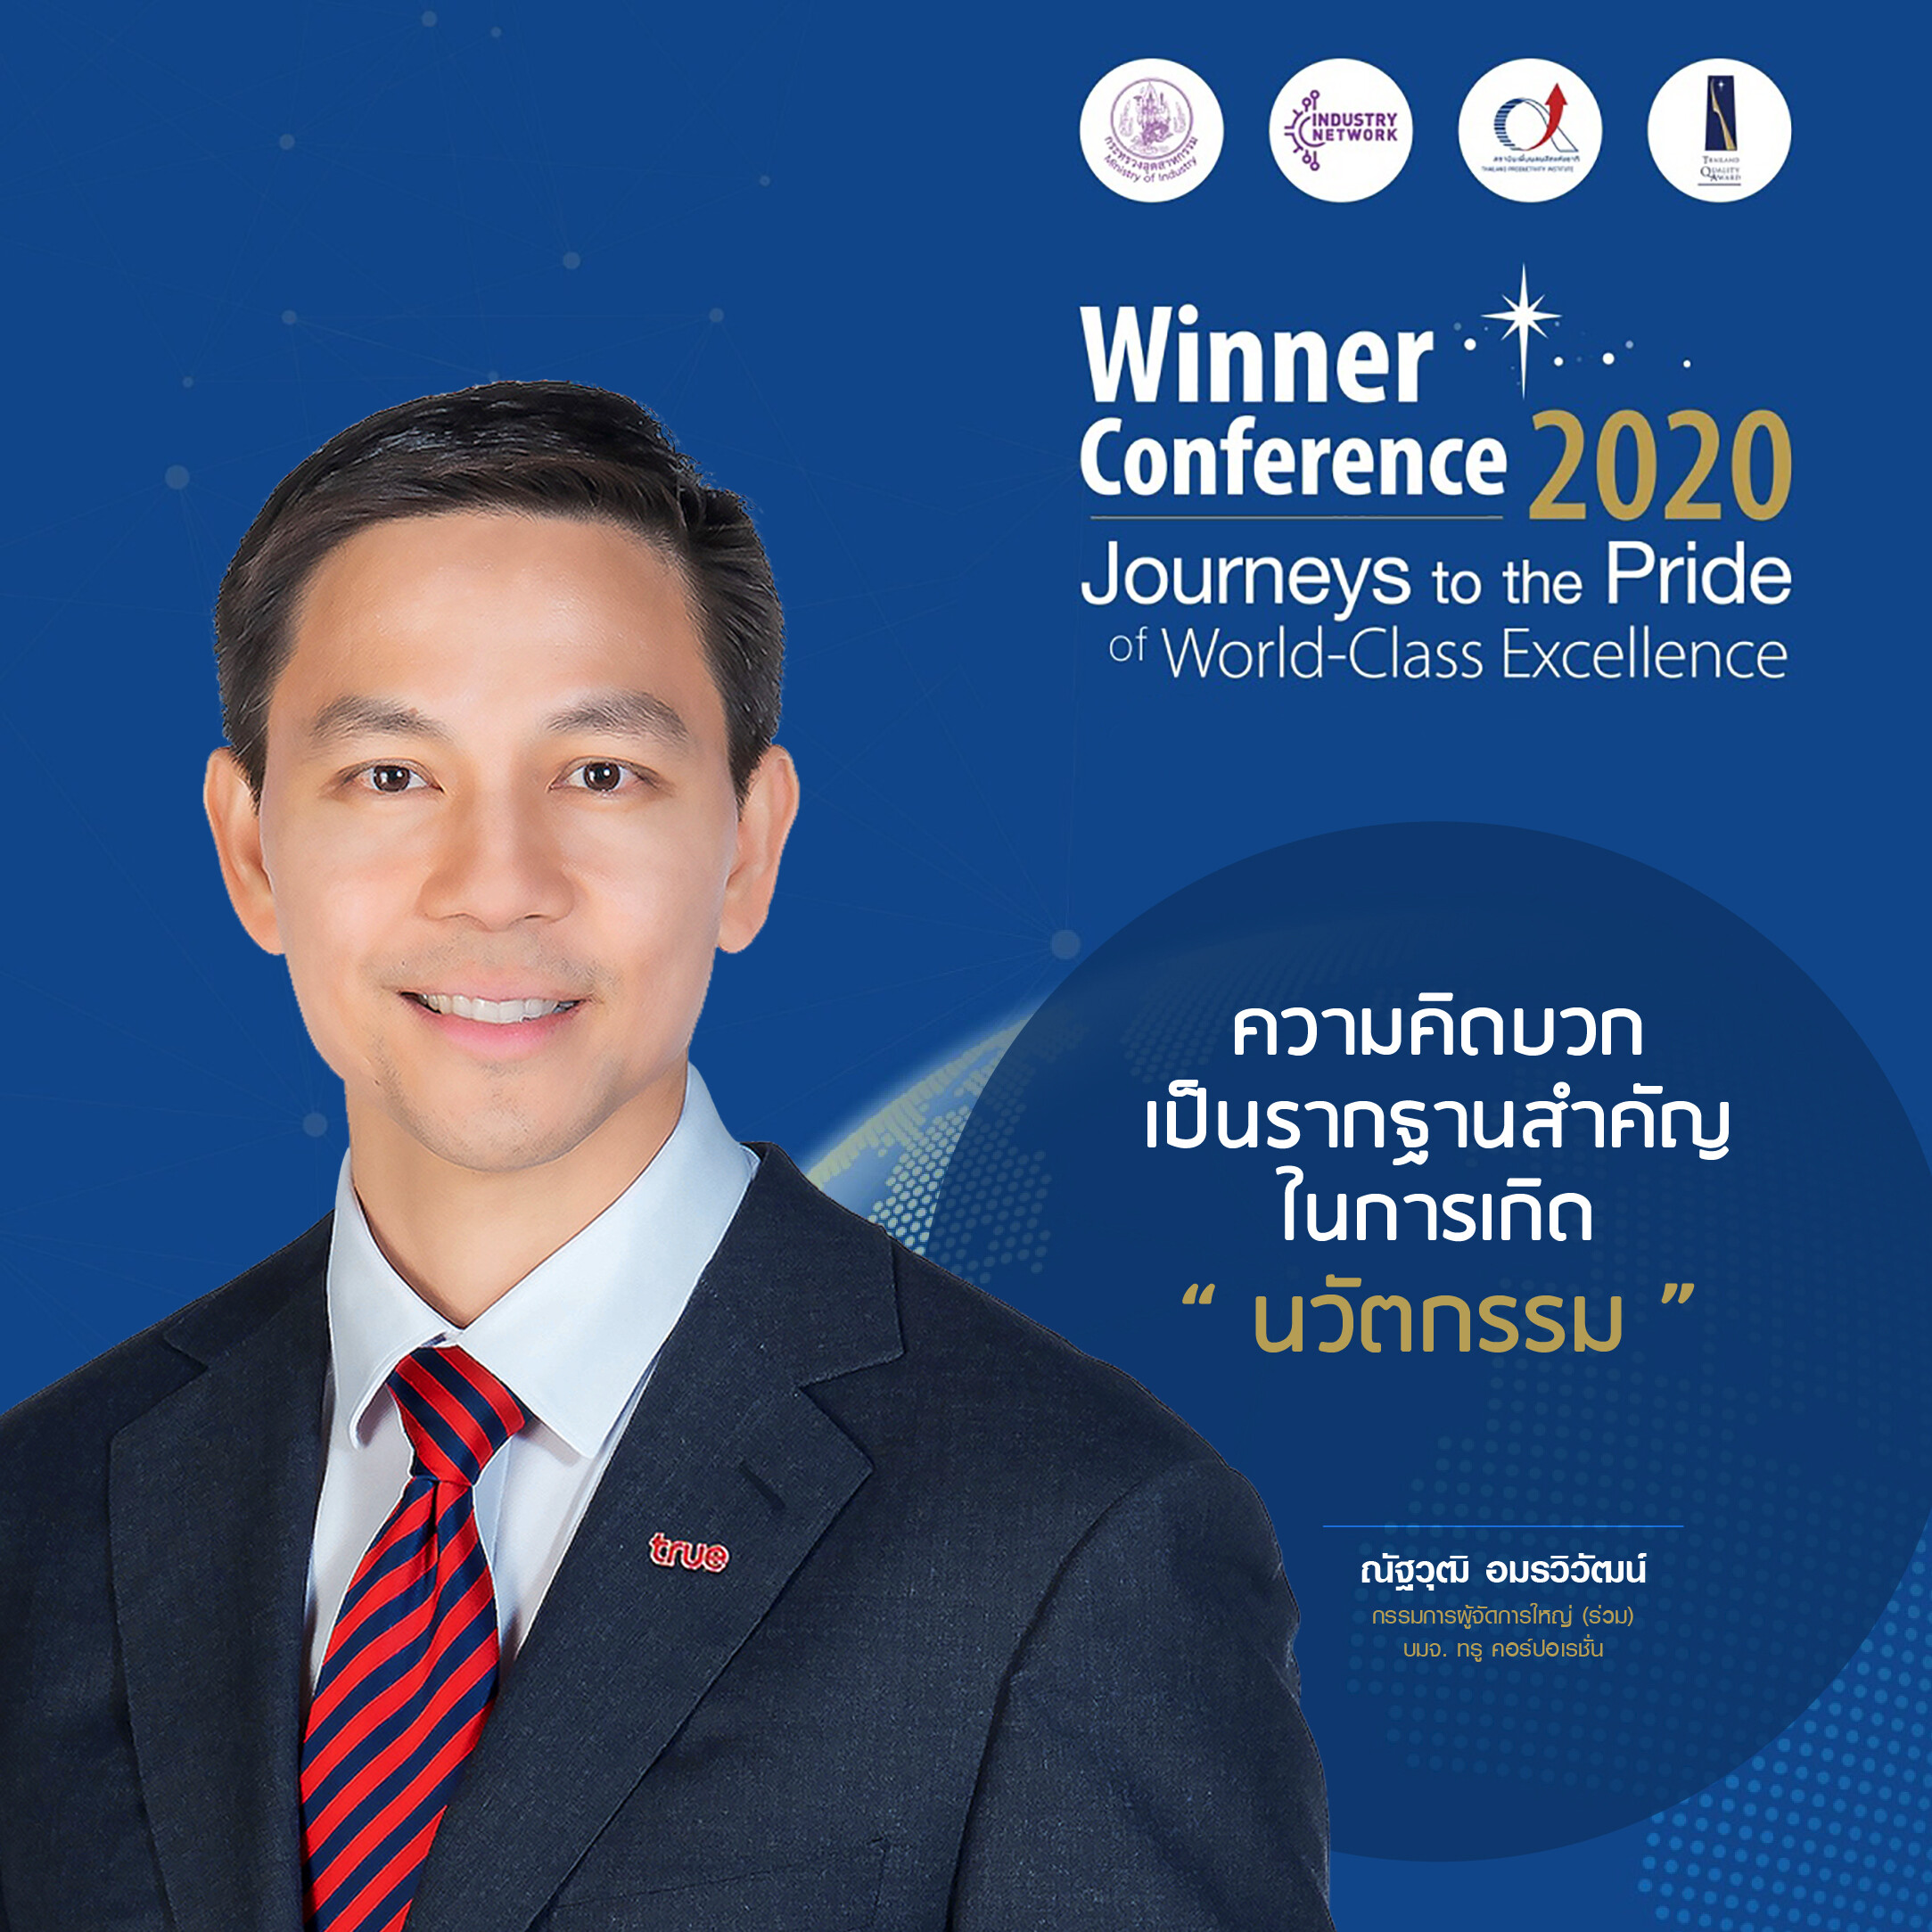 ส่งต่อแรงบันดาลใจ…กลุ่มทรู ร่วมแบ่งปันองค์ความรู้ "Passion for Excellence" ในงาน "Thailand Quality Award Winner Conference 2020"